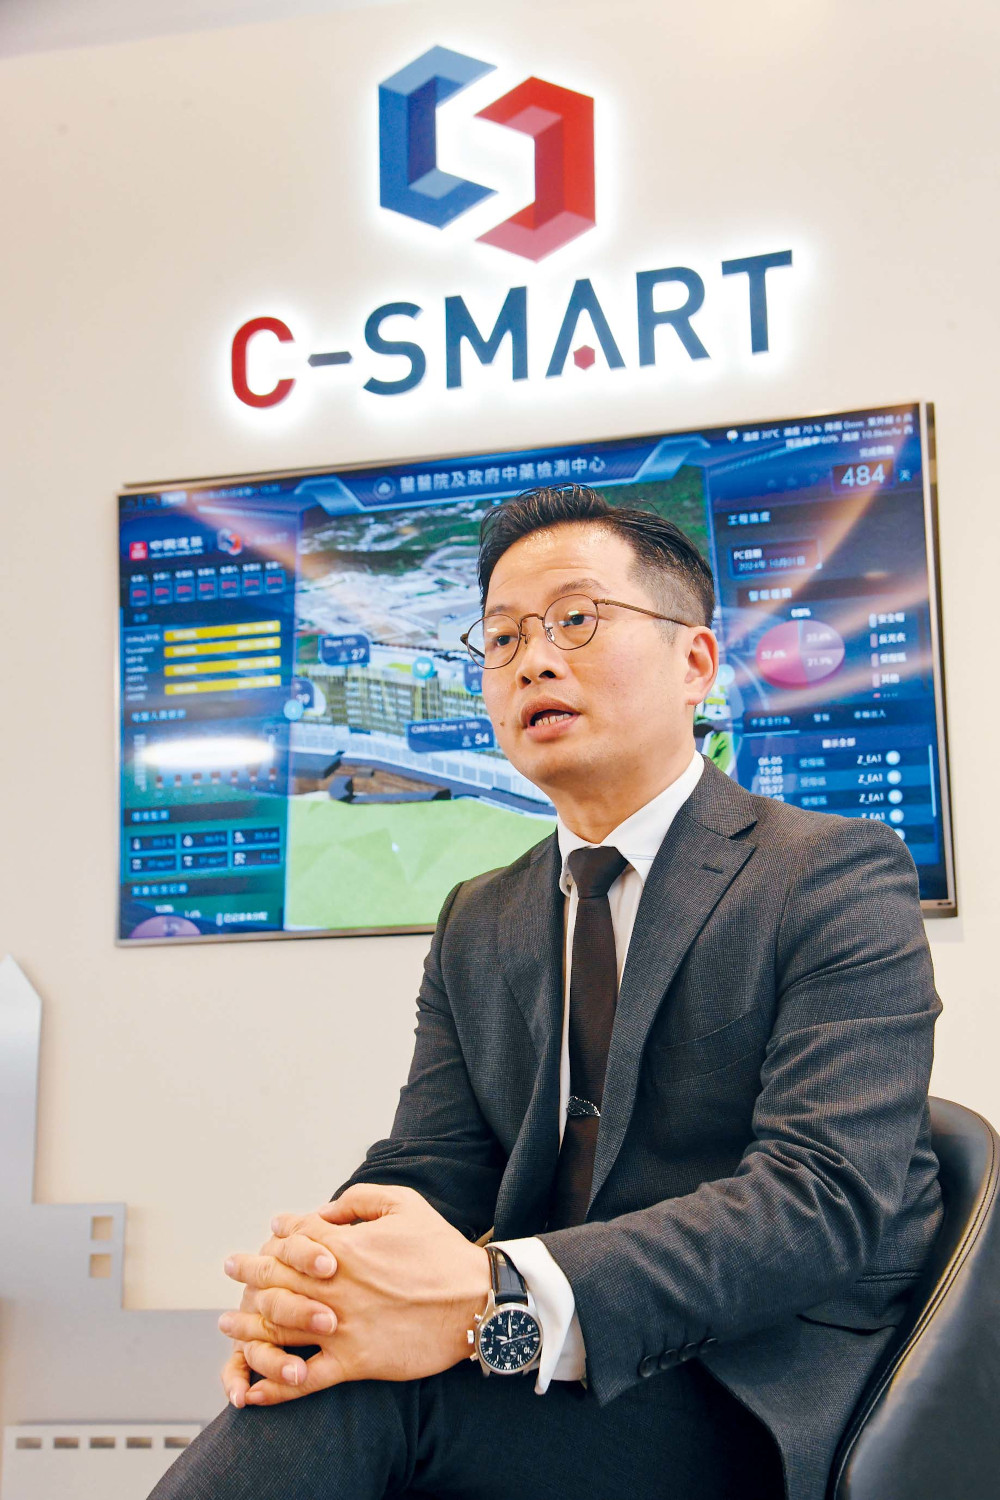 C-SMART智慧工地管理系统由中国建筑工程（香港）有限公司开发，张先生说现时公司上下都为下一个阶段C-SMART 4.0奋斗，希望尽快推陈出新，继续创新超越、领潮前行。